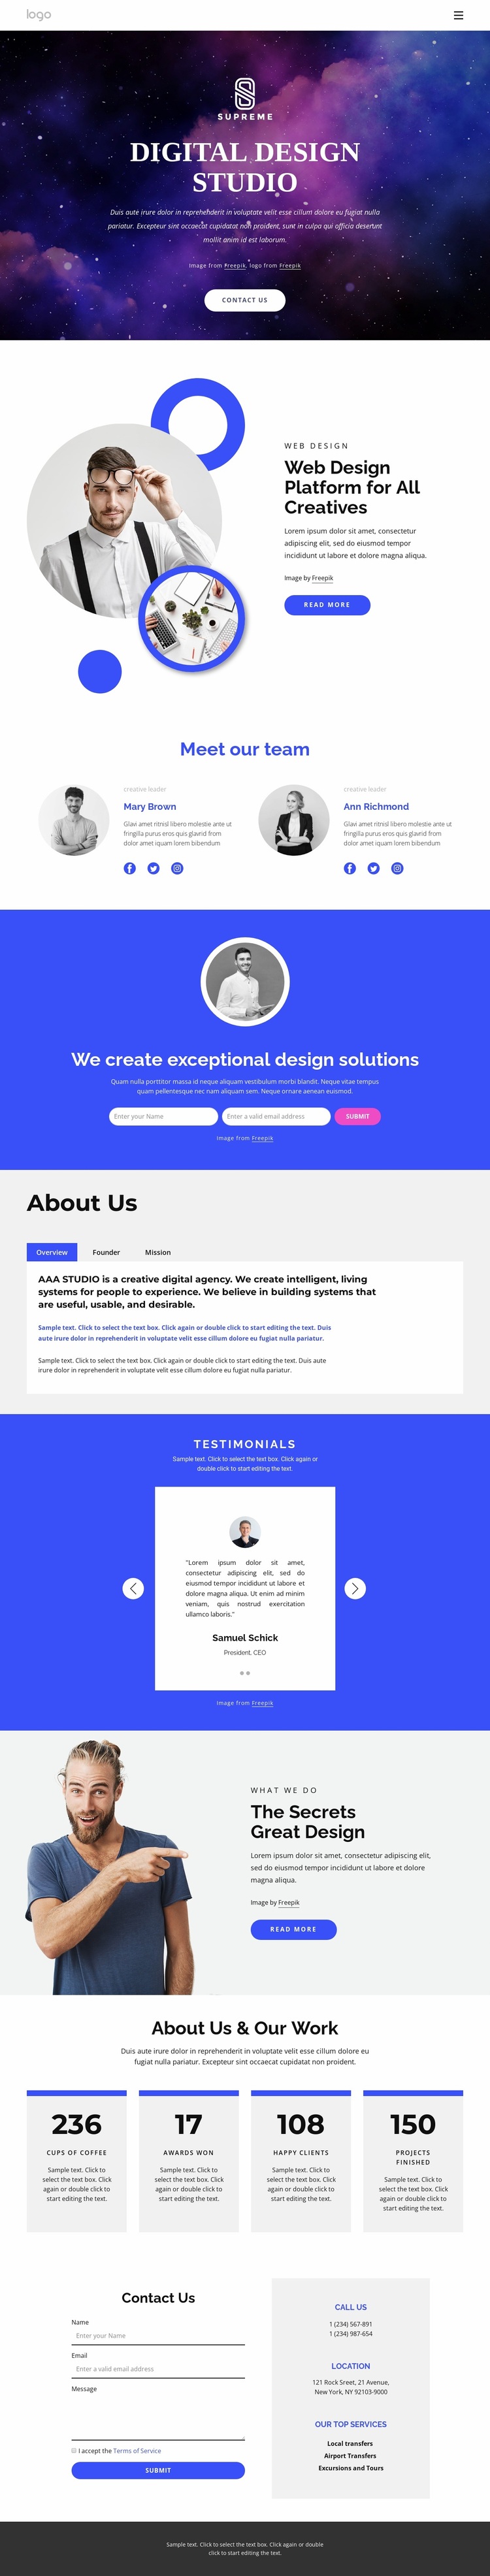 Digital design agency Website Design